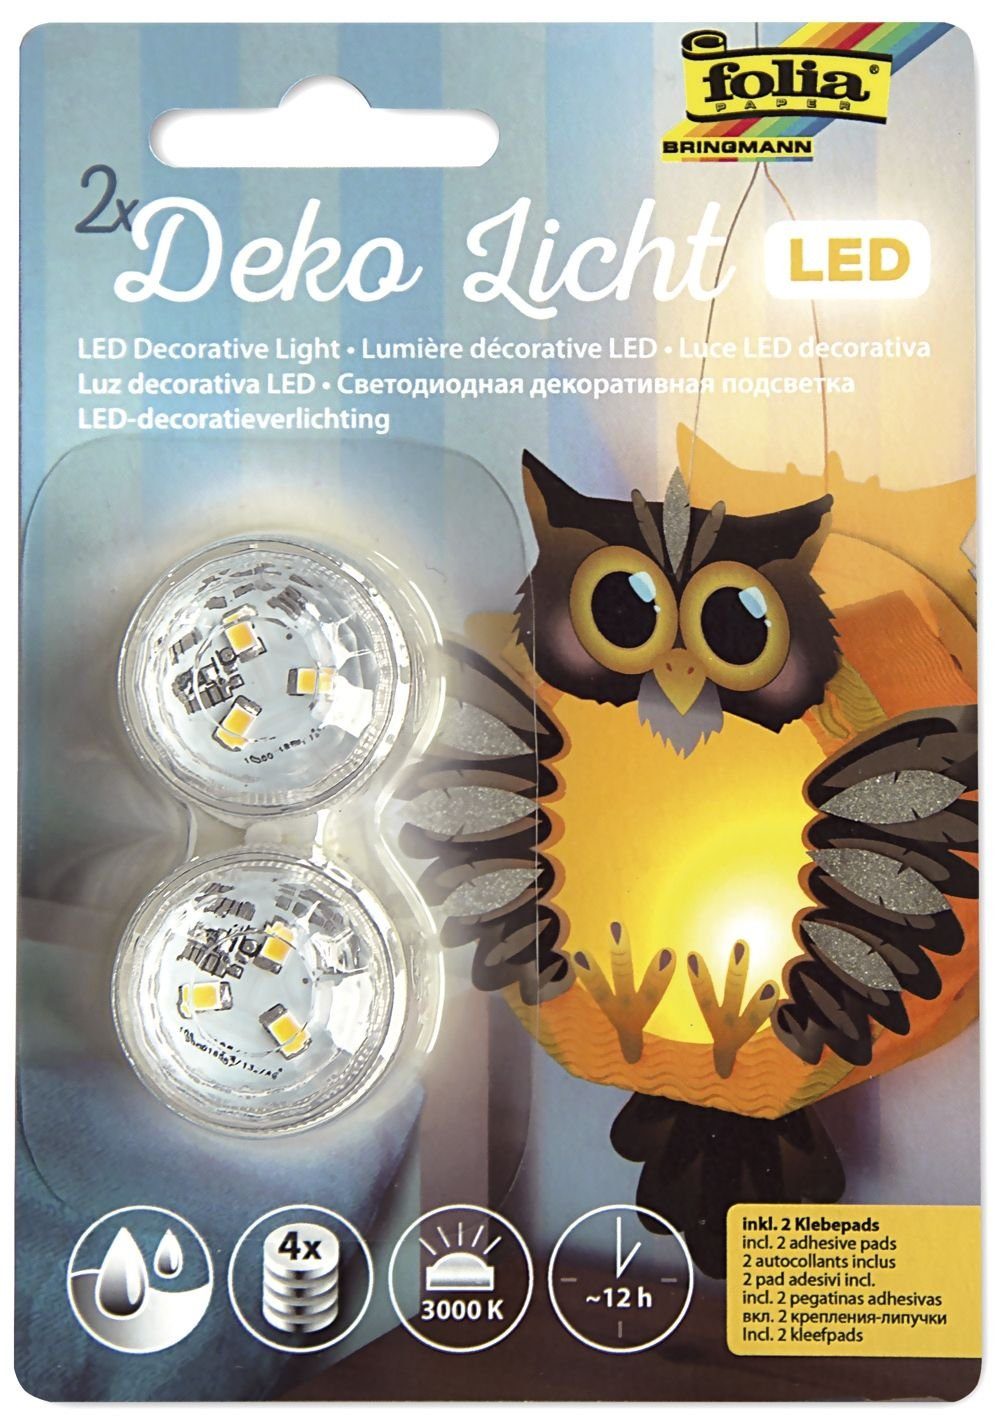 Folia Handgelenkstütze folia LED-Deko-Licht, inkl. Batterien